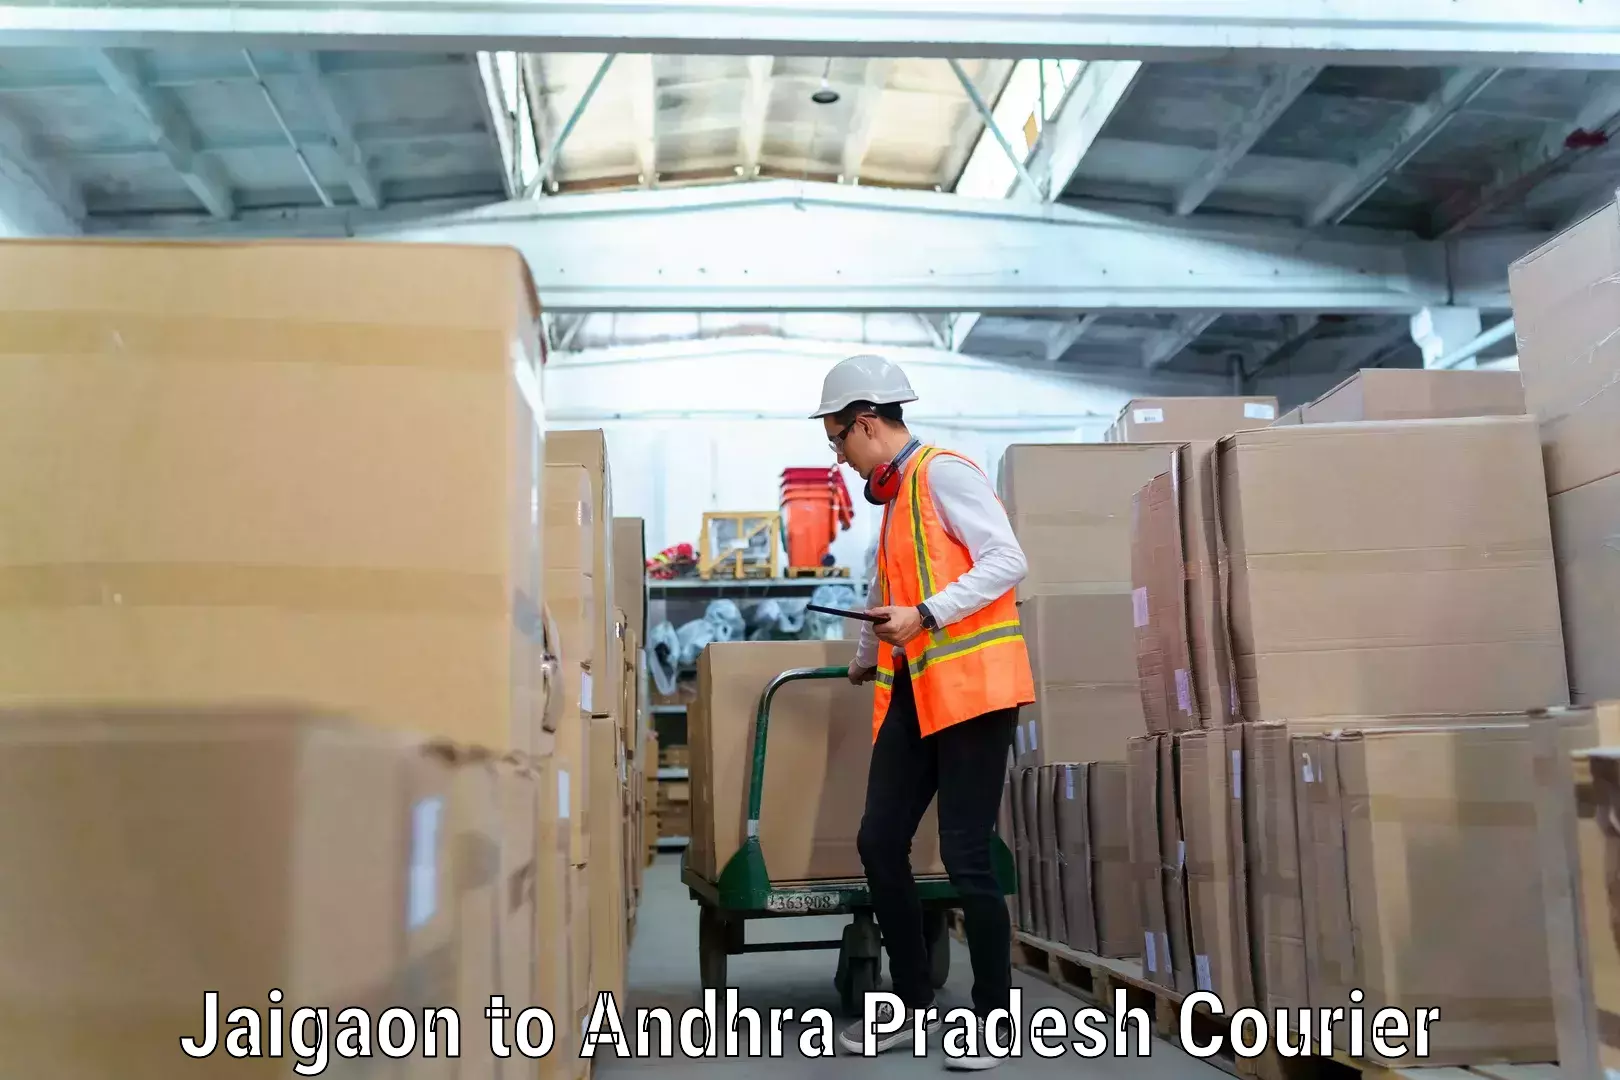 Furniture moving experts Jaigaon to Andhra Pradesh